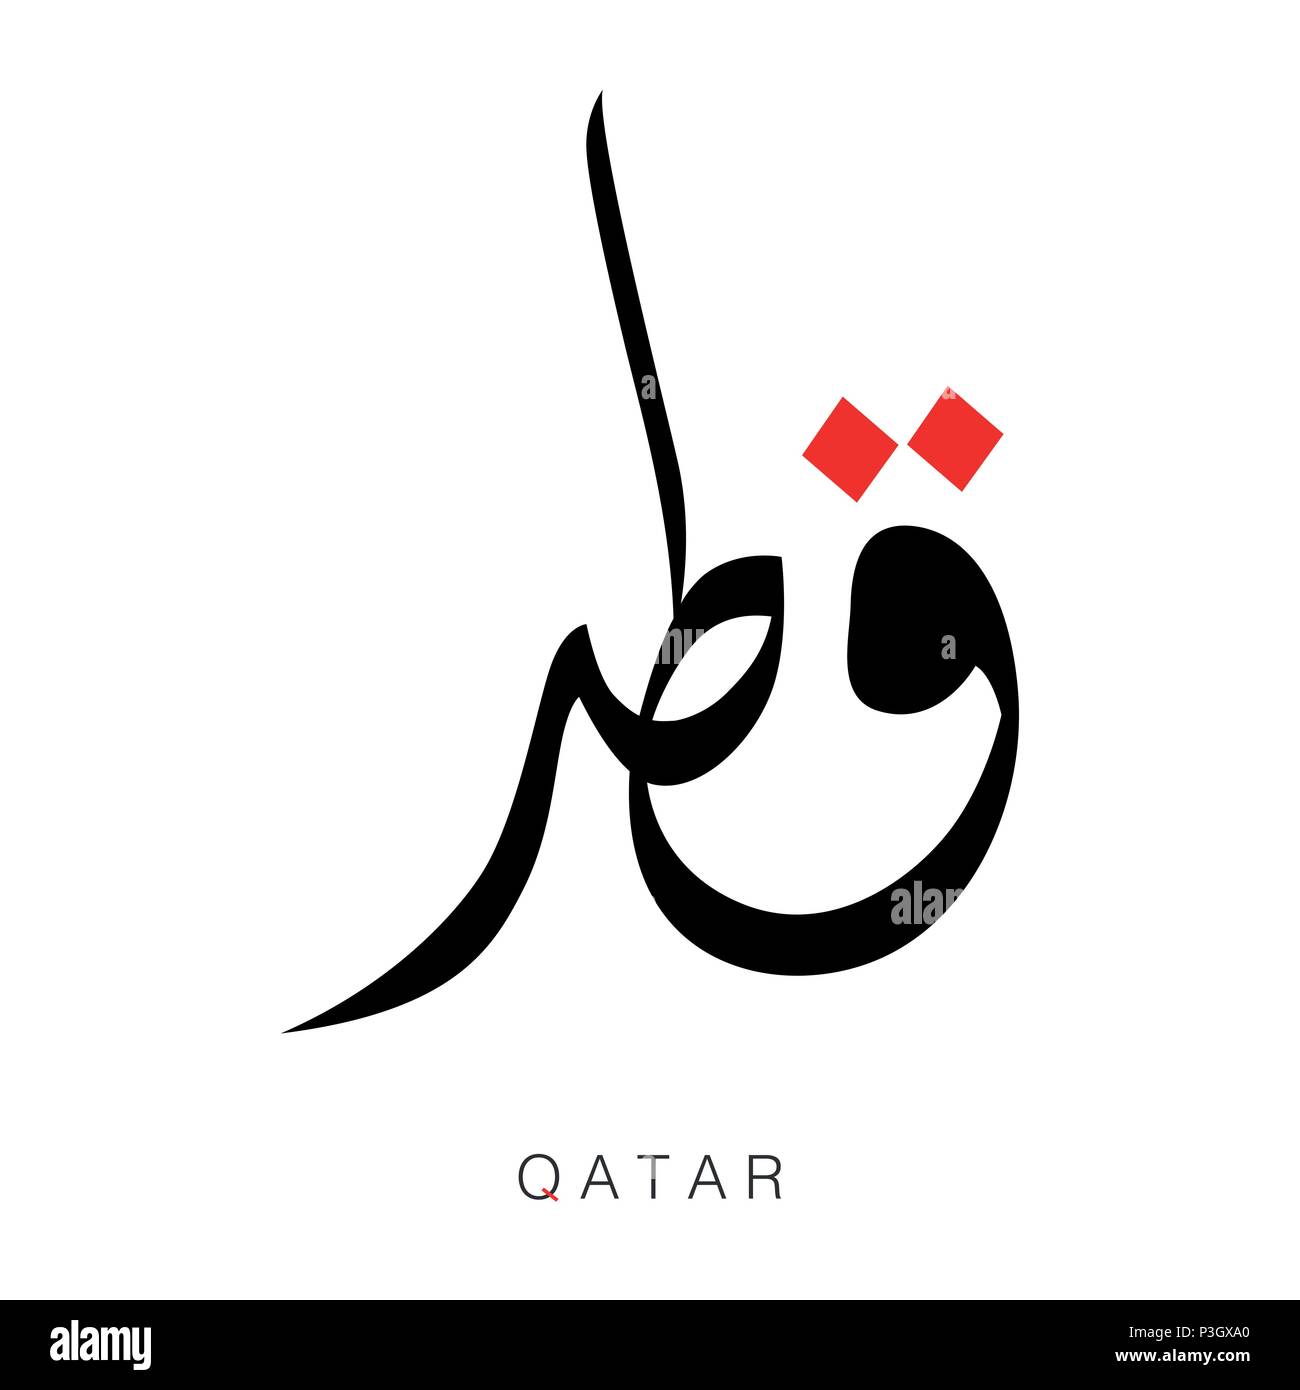 Le Qatar mot dans la calligraphie arabe, la calligraphie arabe QATAR titre sur fond blanc-Vector Illustration. Illustration de Vecteur